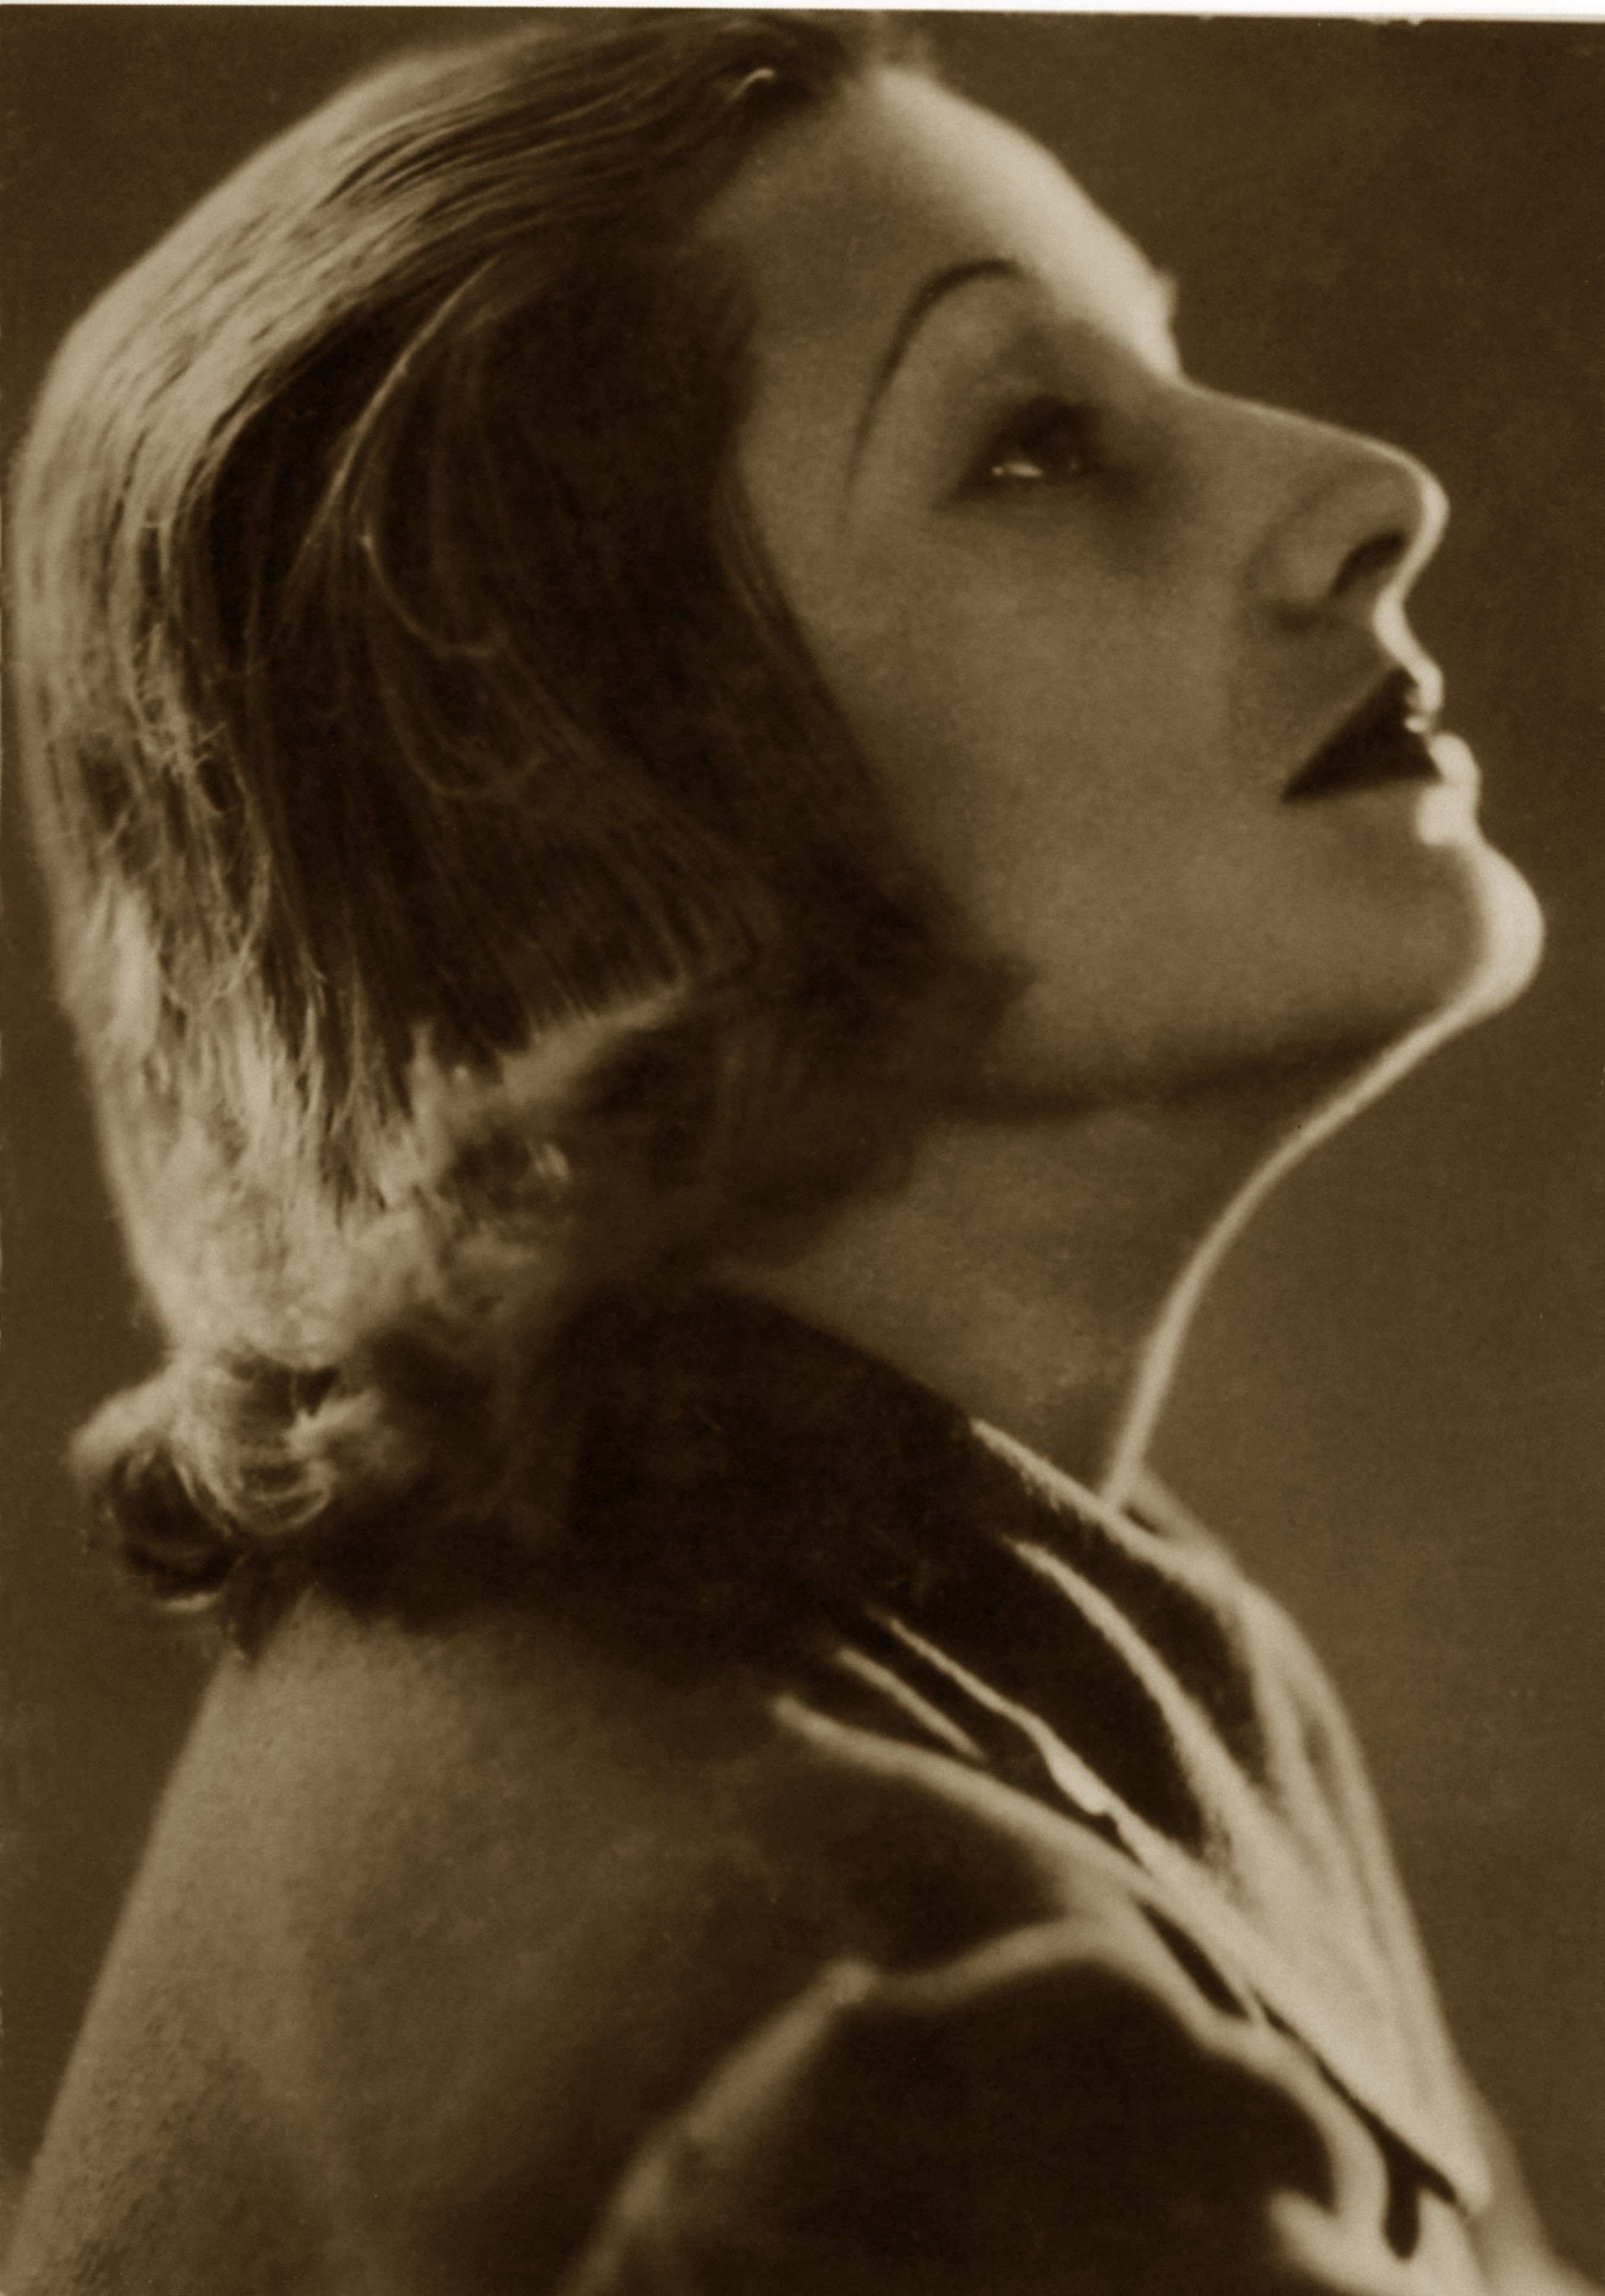 La mamma di Sofia, Romilda Villani. Anche lei era destinata al cinema per la somiglianza con Greta Garbo